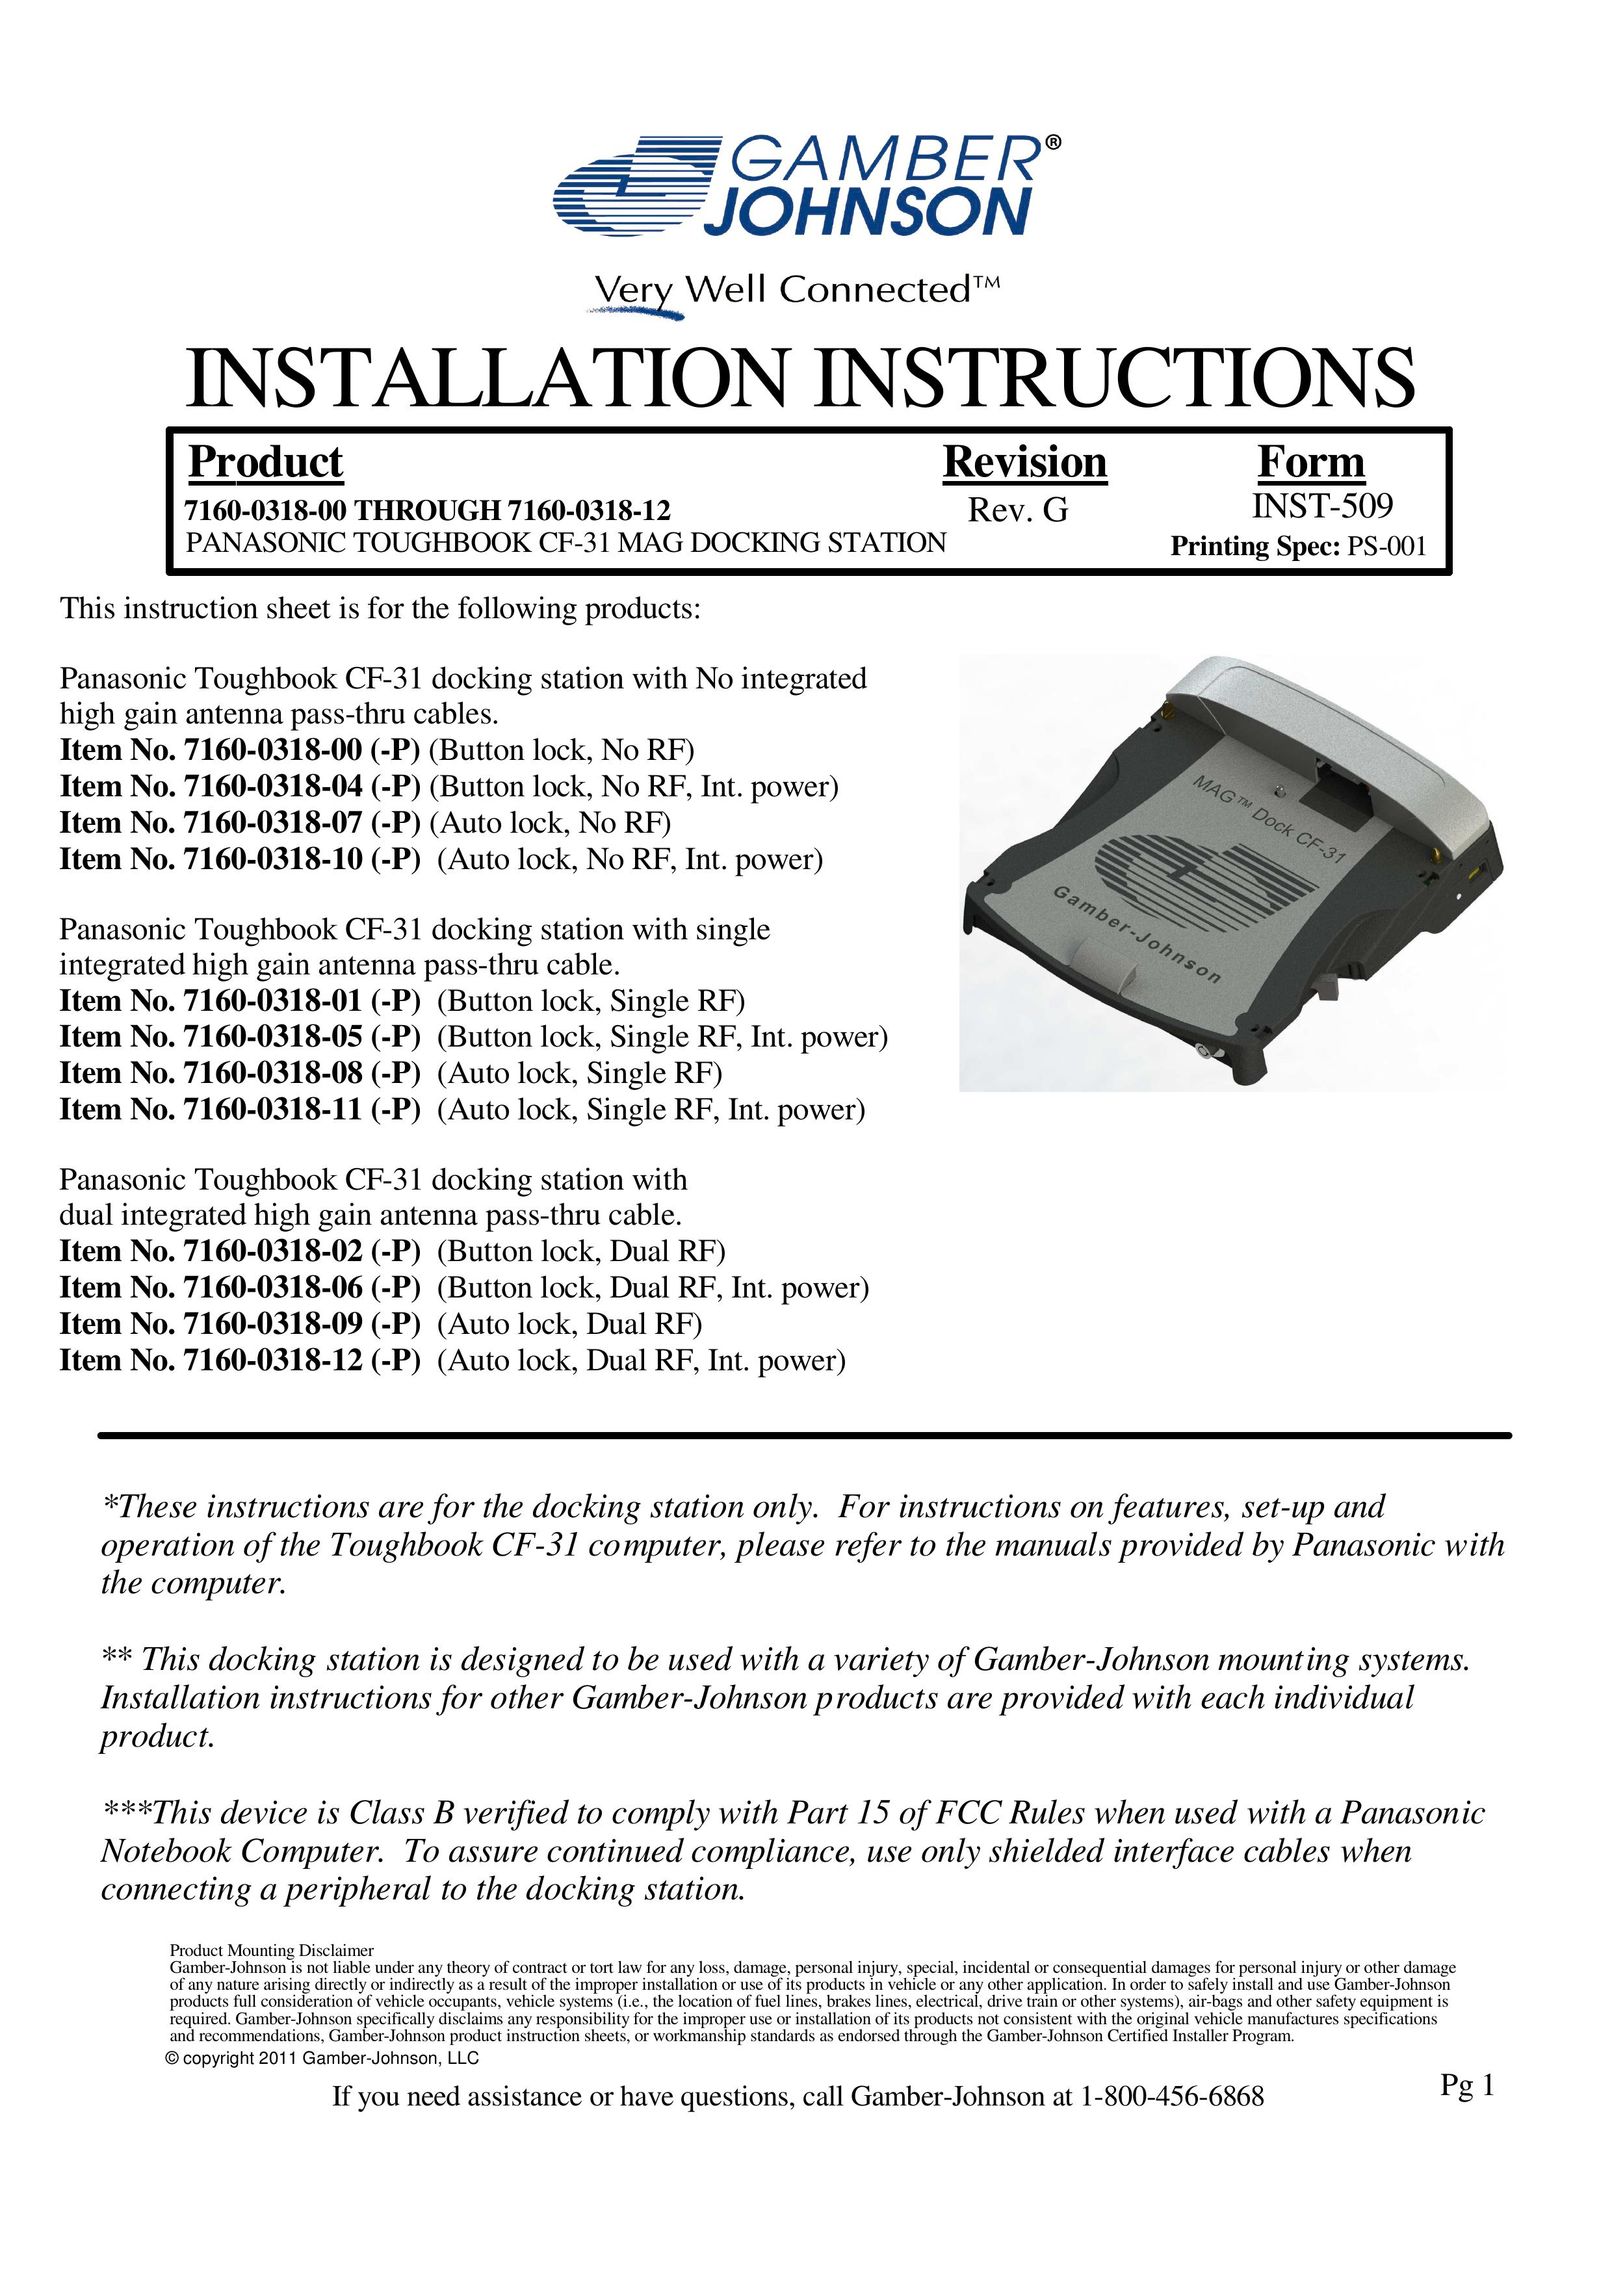 Gamber Johnson 7160-0318-05 Laptop Docking Station User Manual